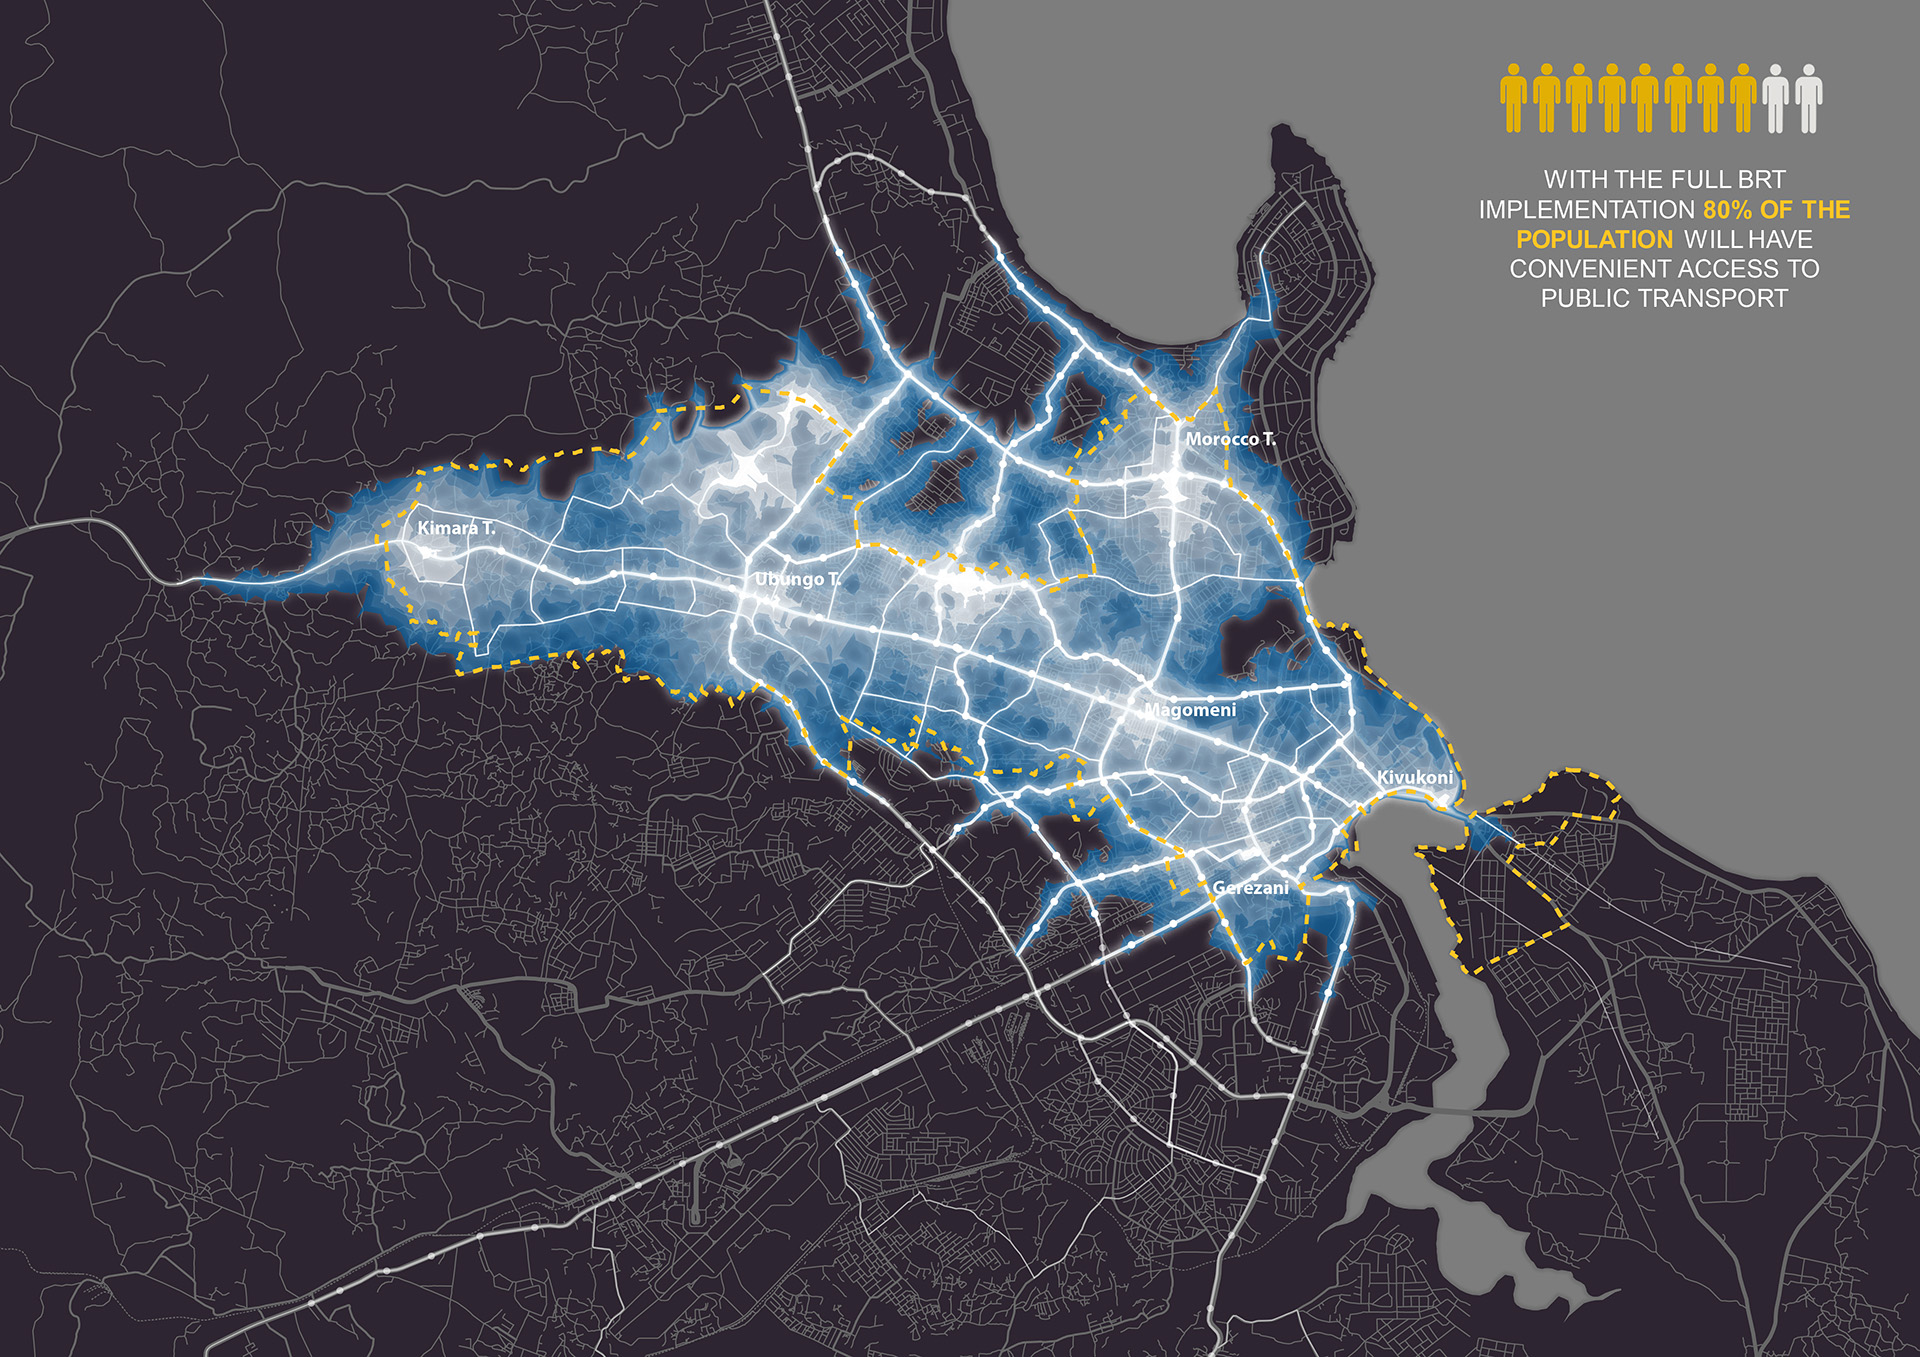 L'indicatore di densità del trasporto pubblico identifica le aree del territorio urbano esistente e futuro di Dar es Salaam che presentano alti livelli di accessibilità al trasporto pubblico